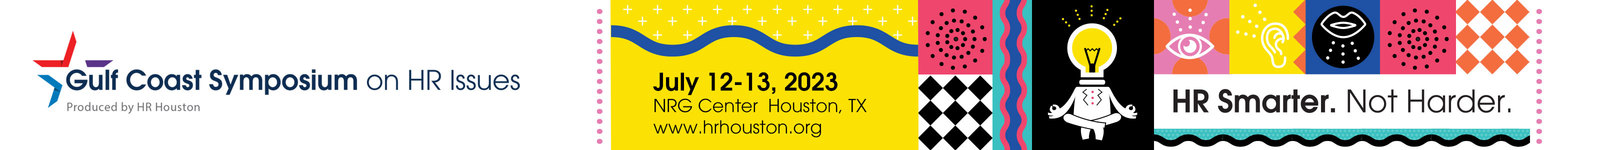 Gulf Coast Symposium on HR Issues 2023 logo